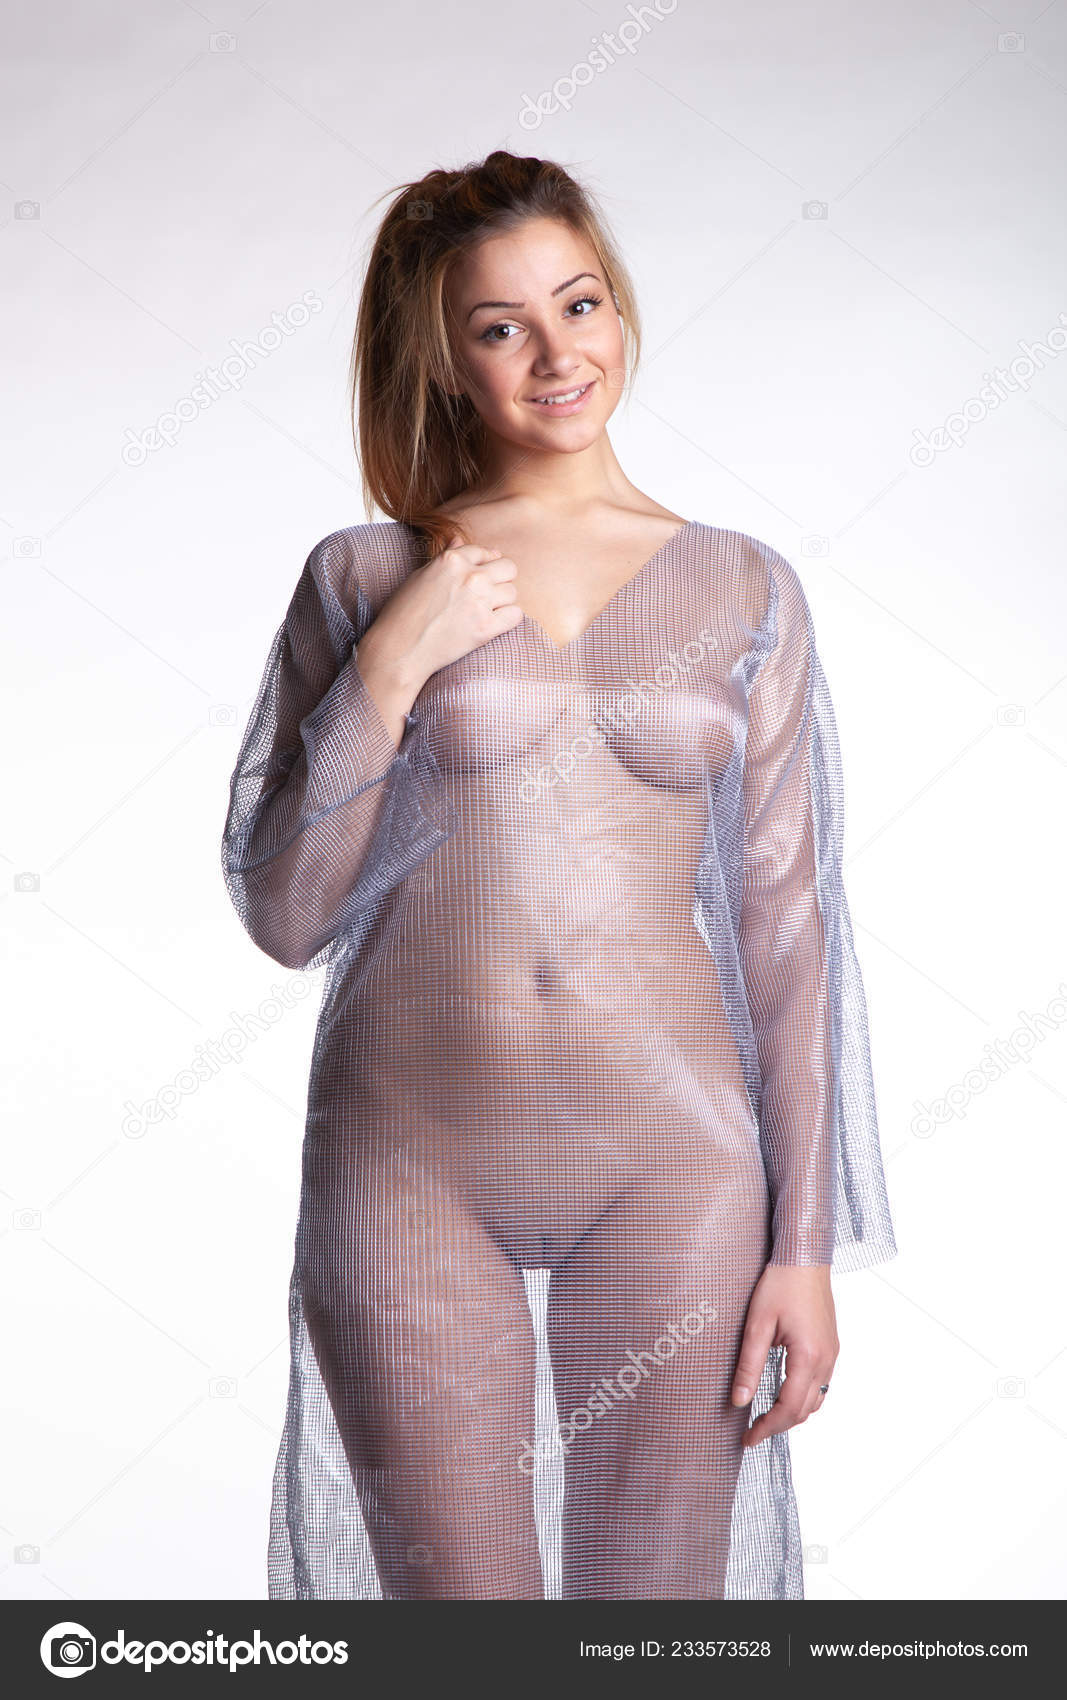 https://st4n.depositphotos.com/10086424/23357/i/1600/depositphotos_233573528-stock-photo-young-beautiful-girl-posing-nude.jpg